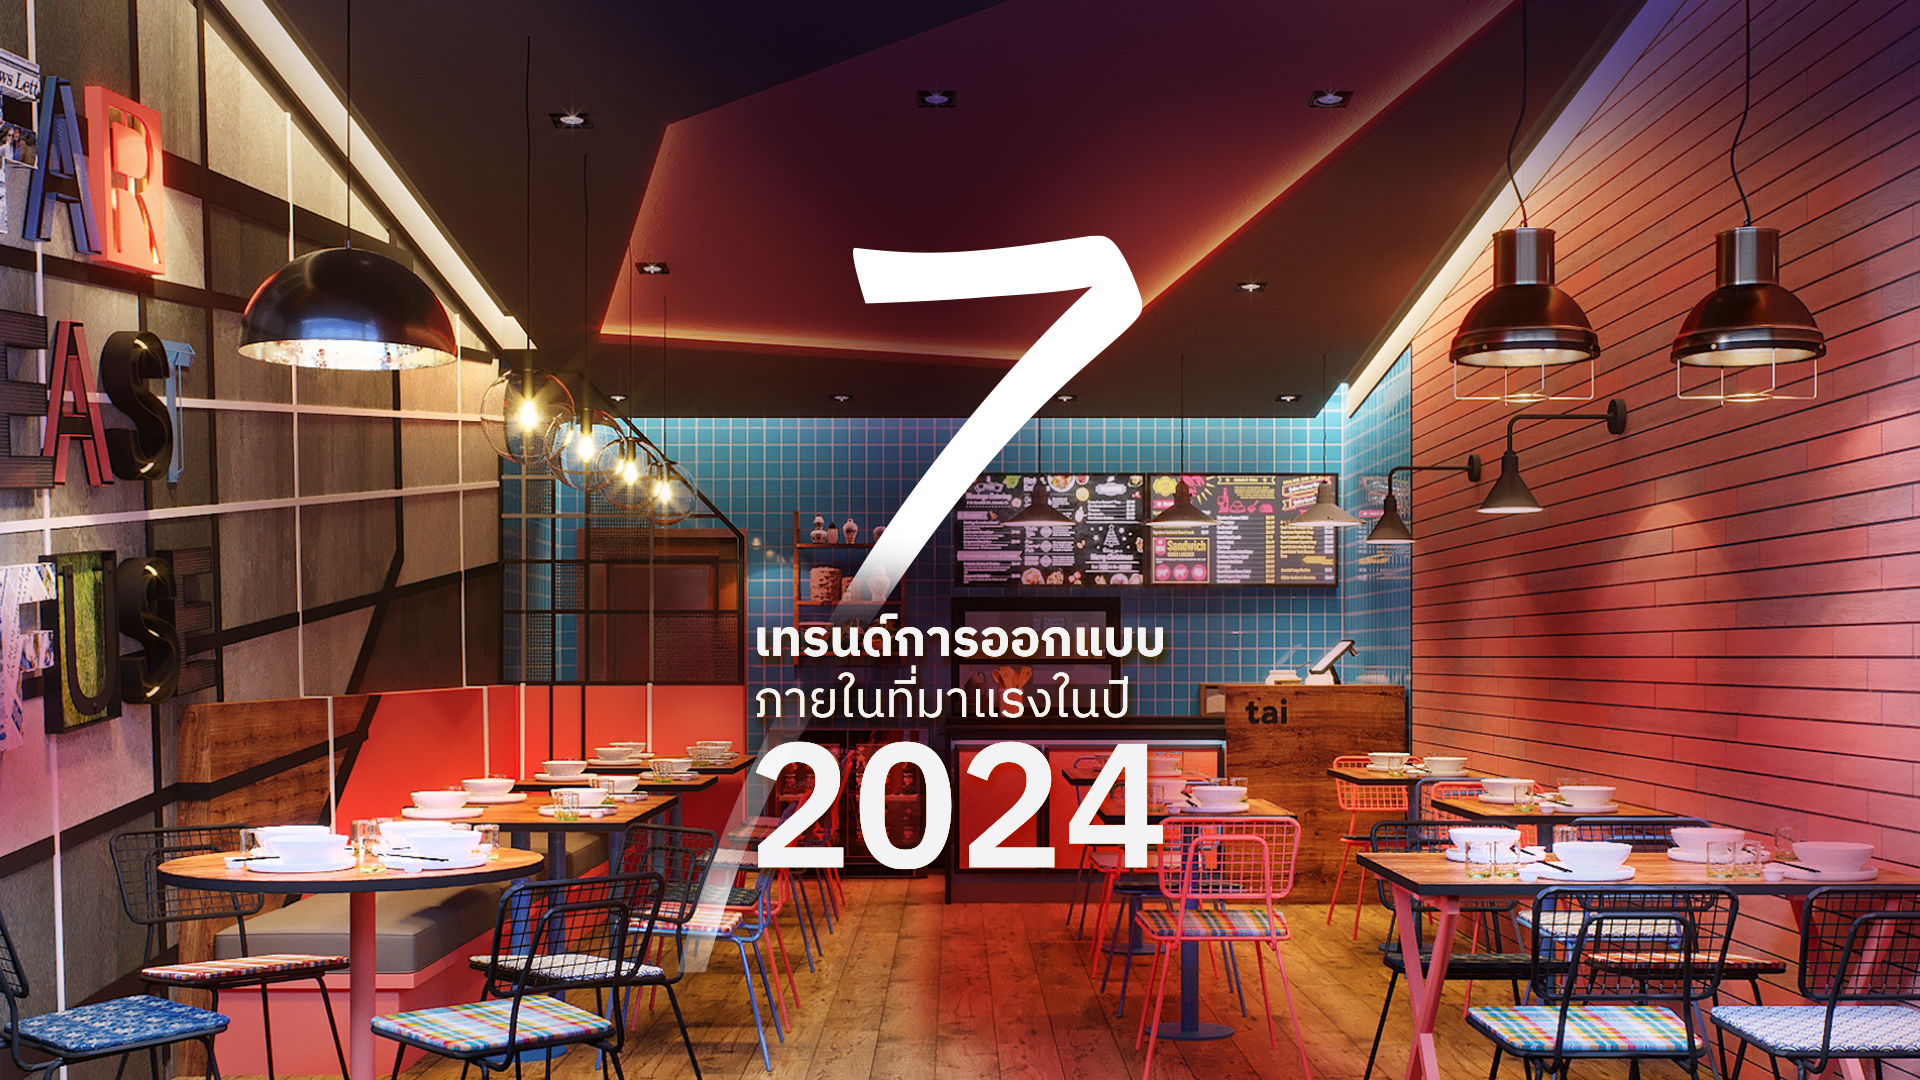 7 เทรนด์การออกแบบภายในที่มาแรงในปี 2024